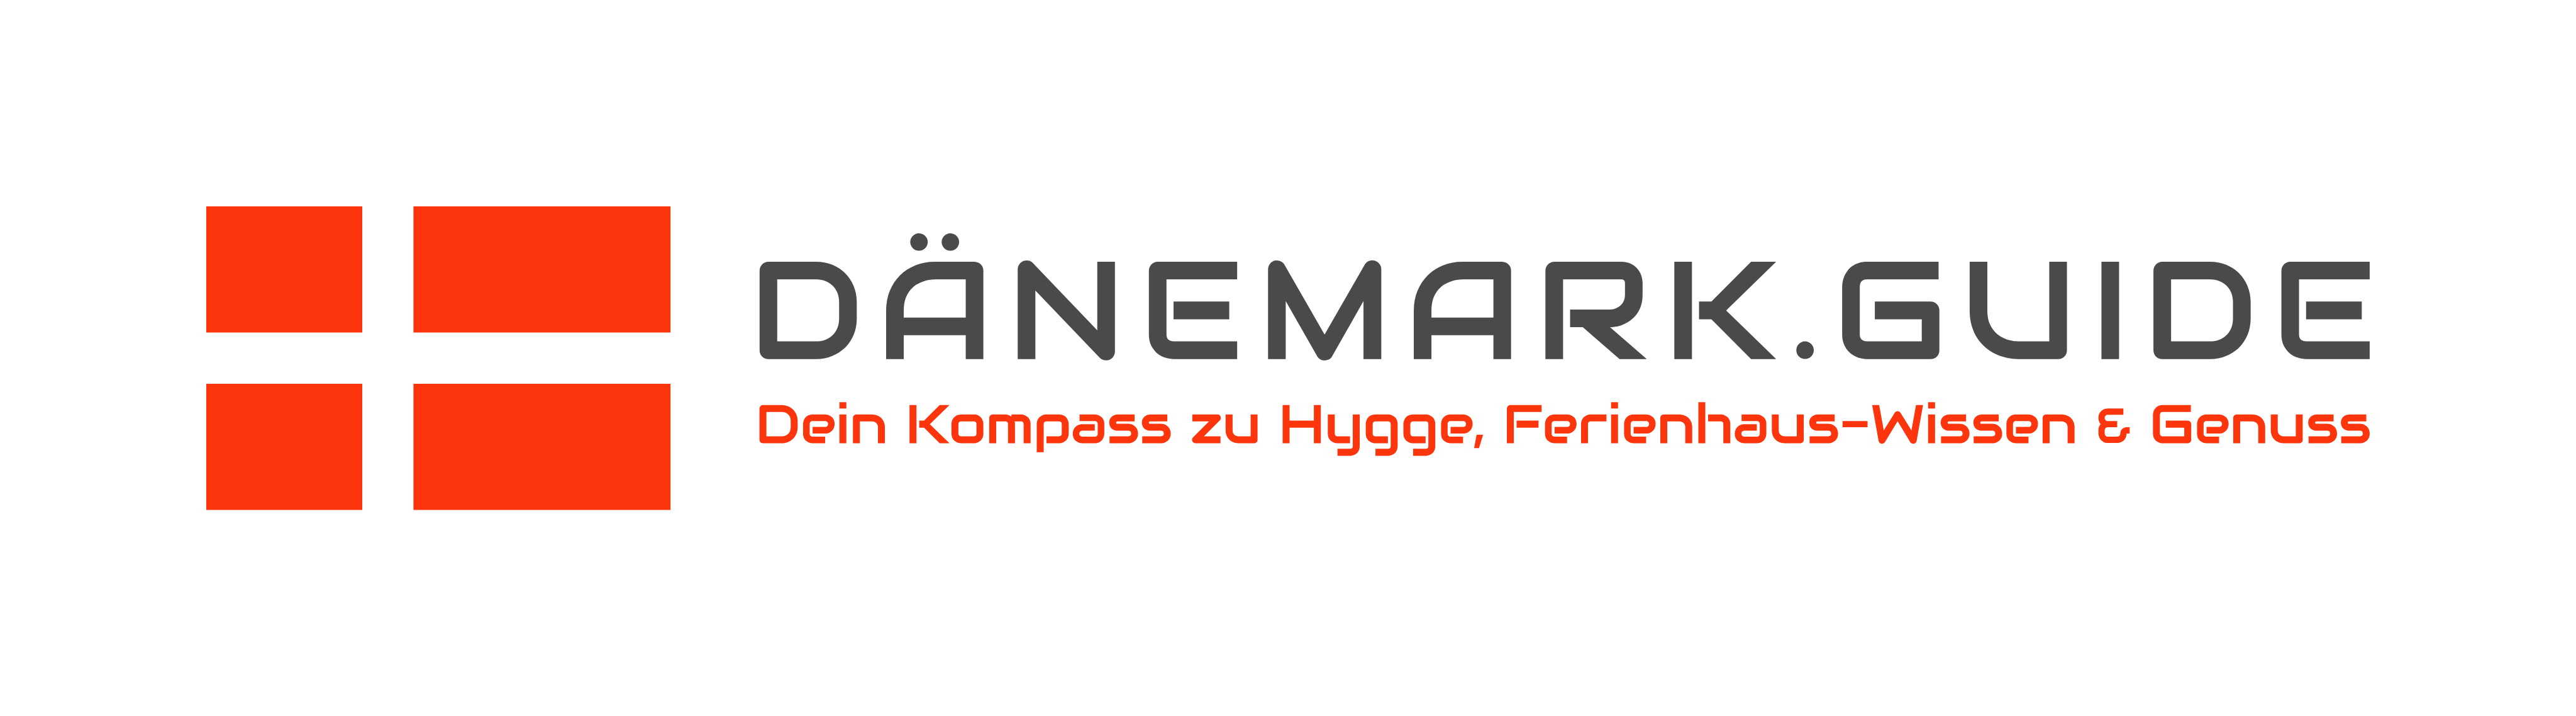 Das Danmark-Guide-Logo auf schwarzem Hintergrund.